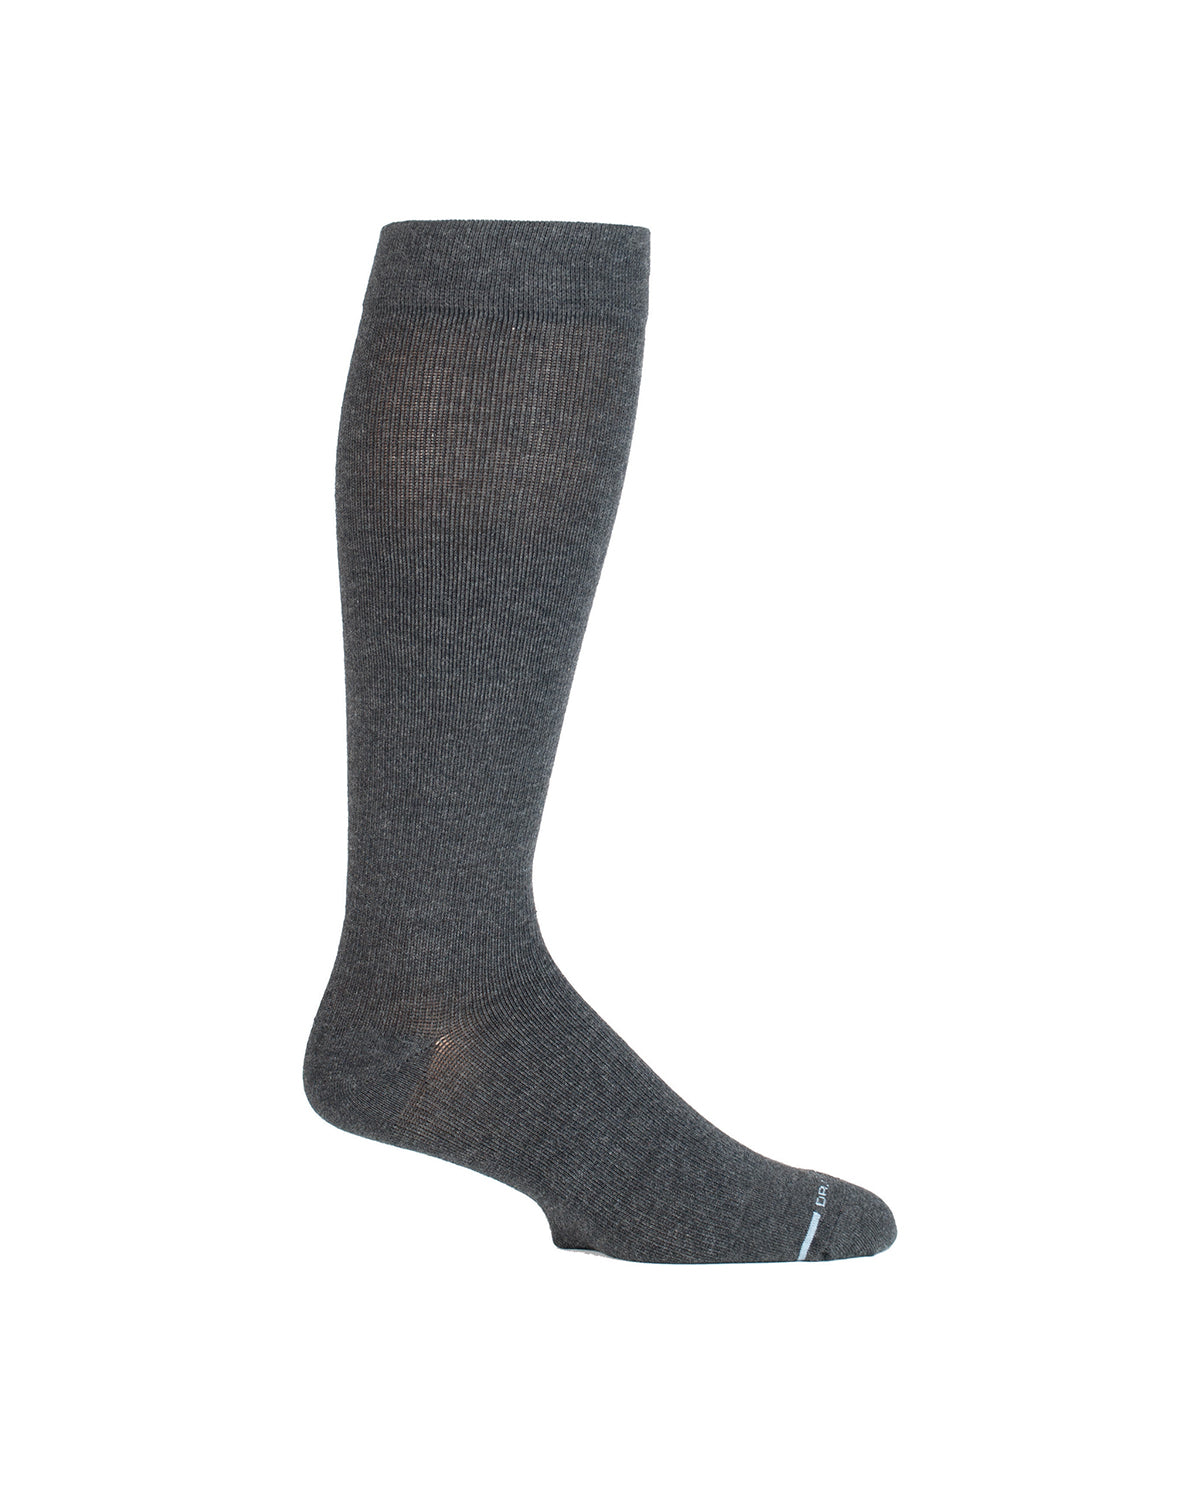 Dr. Motion Men's Mild Compression Knee High Socks